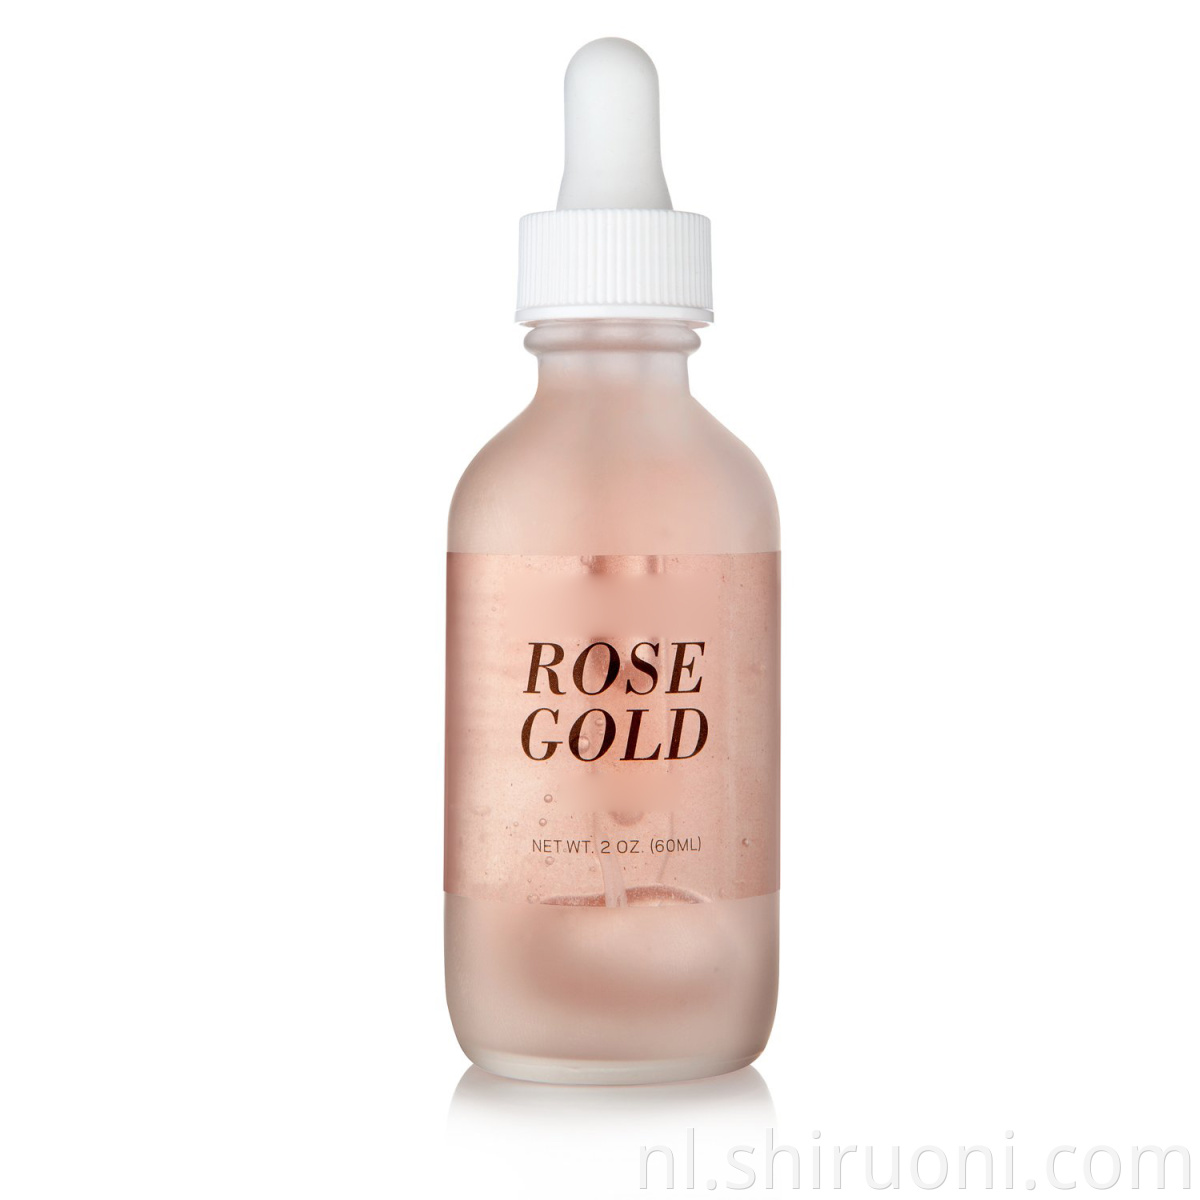 24k rose gold serum